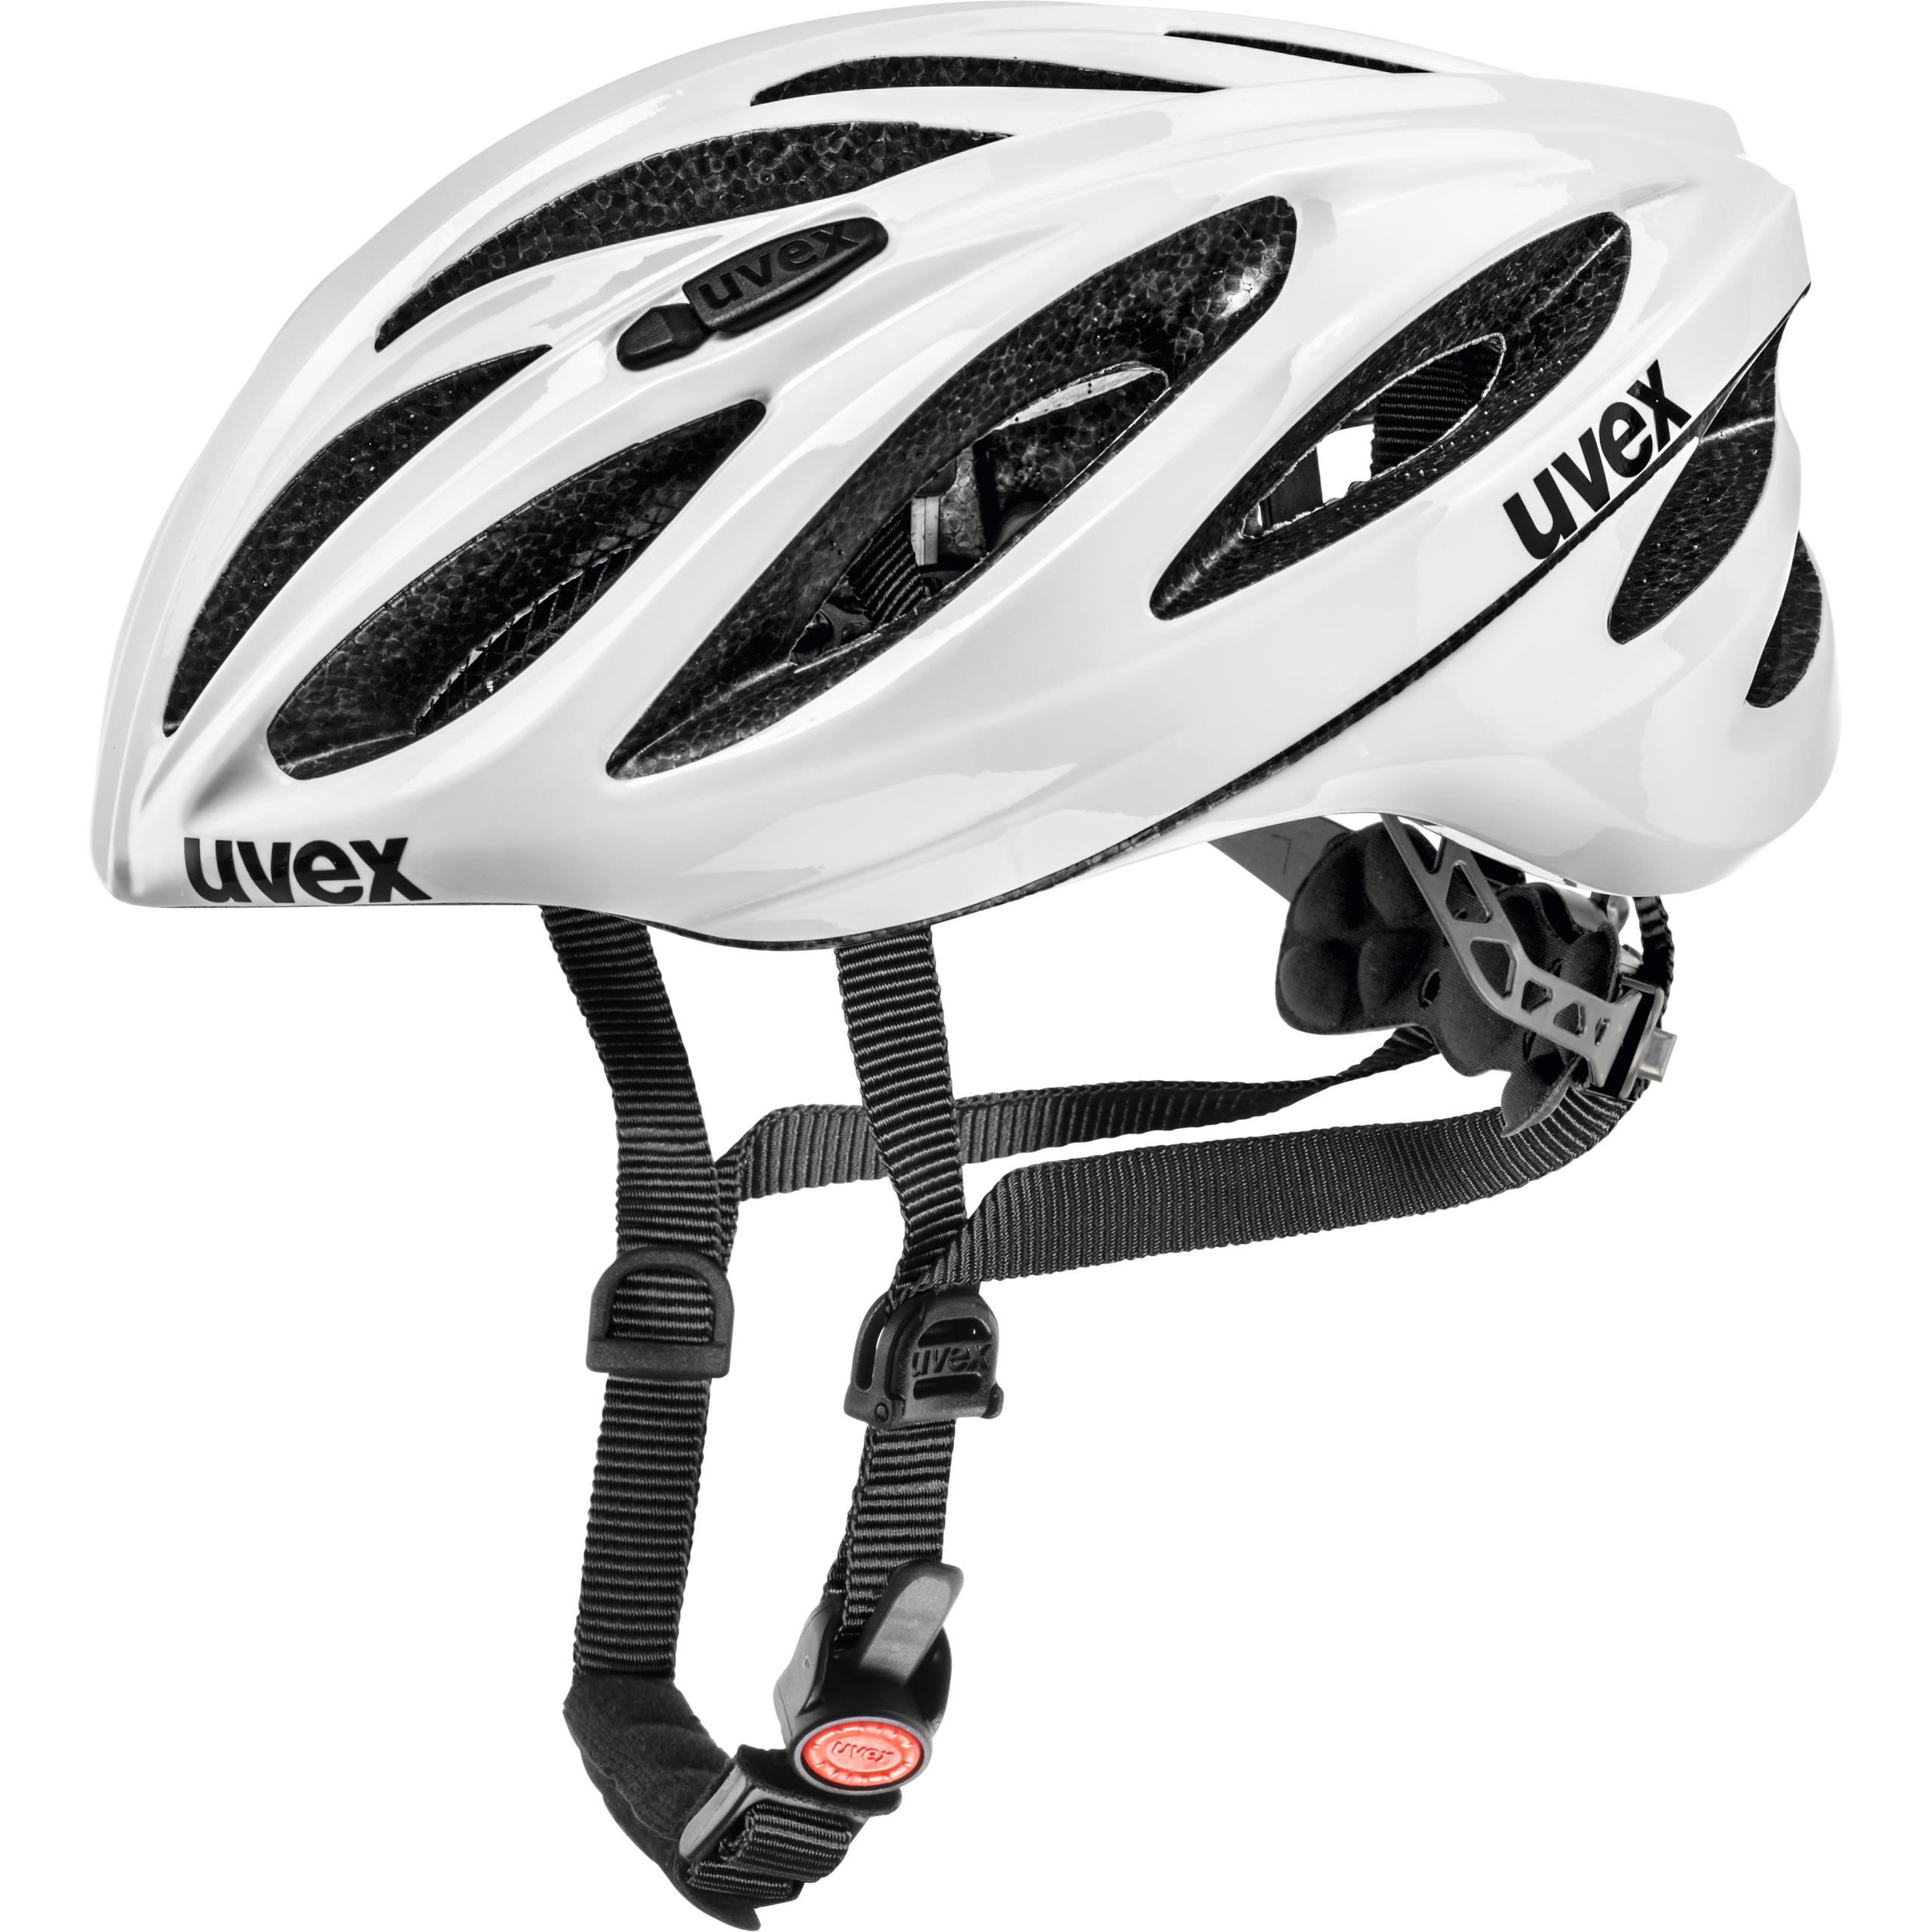 UVEX Fahrrad Helm Boss compact UVP 69,95 € black-white 53-58 cm für Stevens u.a. 